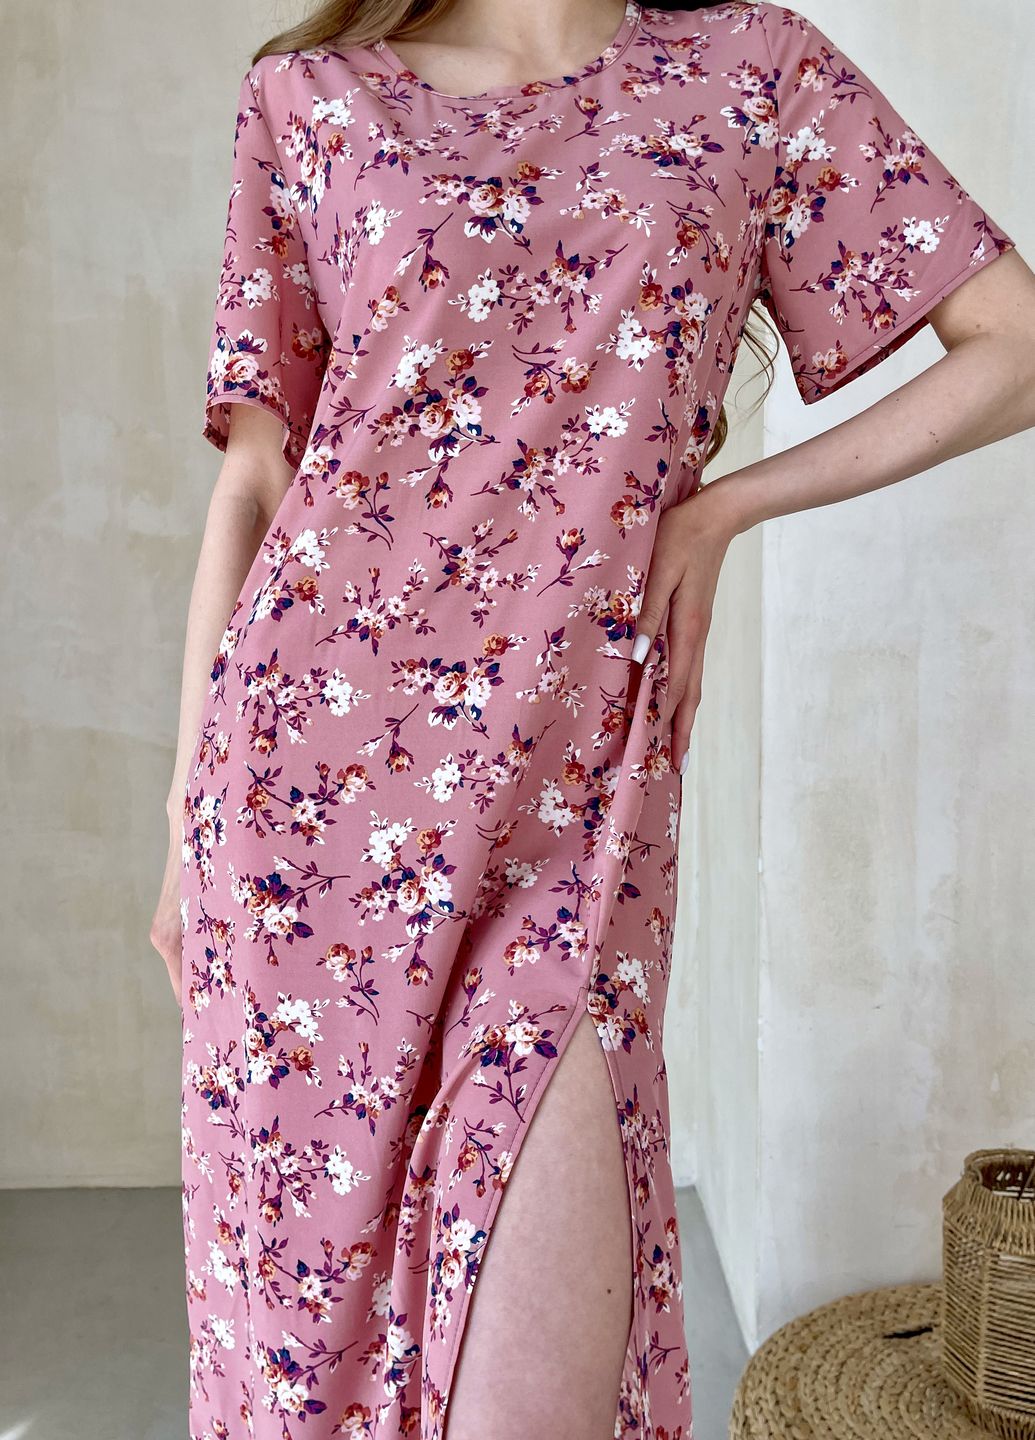 Купить Женское платьедо колена с разрезом и цветочным принтом розовое Merlini Новара 700000221, размер 42-44 (S-M) в интернет-магазине